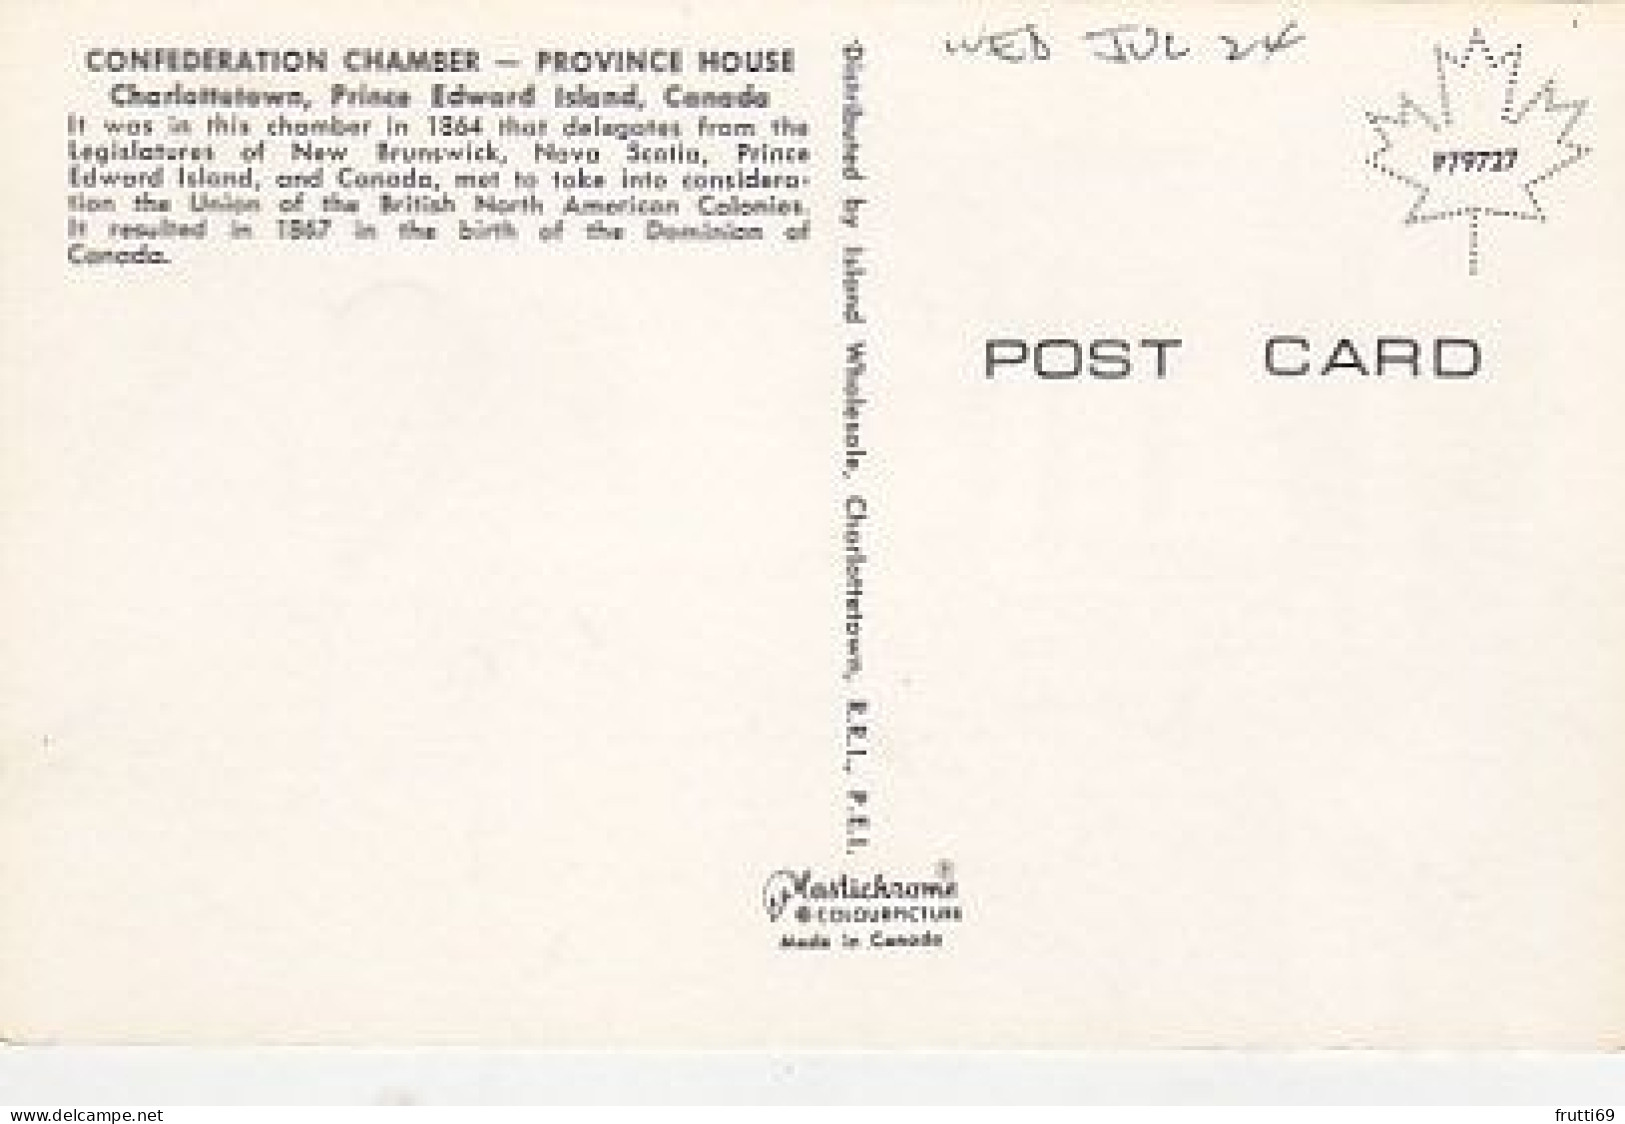 AK 173843 CANADA - Prince Edward Island - Charlottetown - Province House - Confederation Chamber - Charlottetown